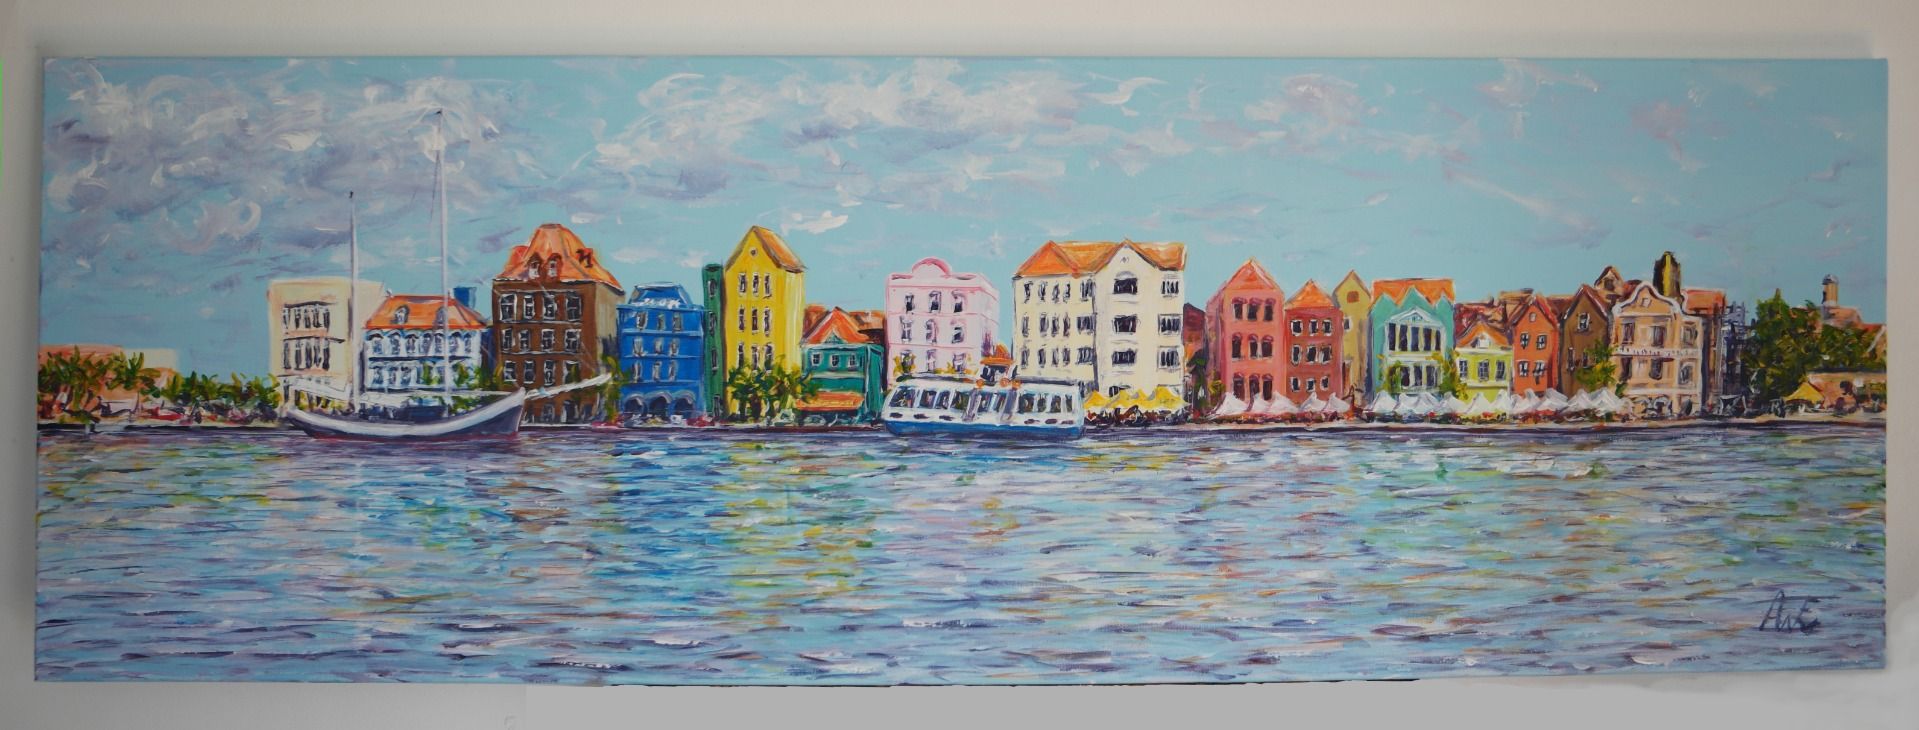 Willemstad Curacao schilderij acrylverf op canvas